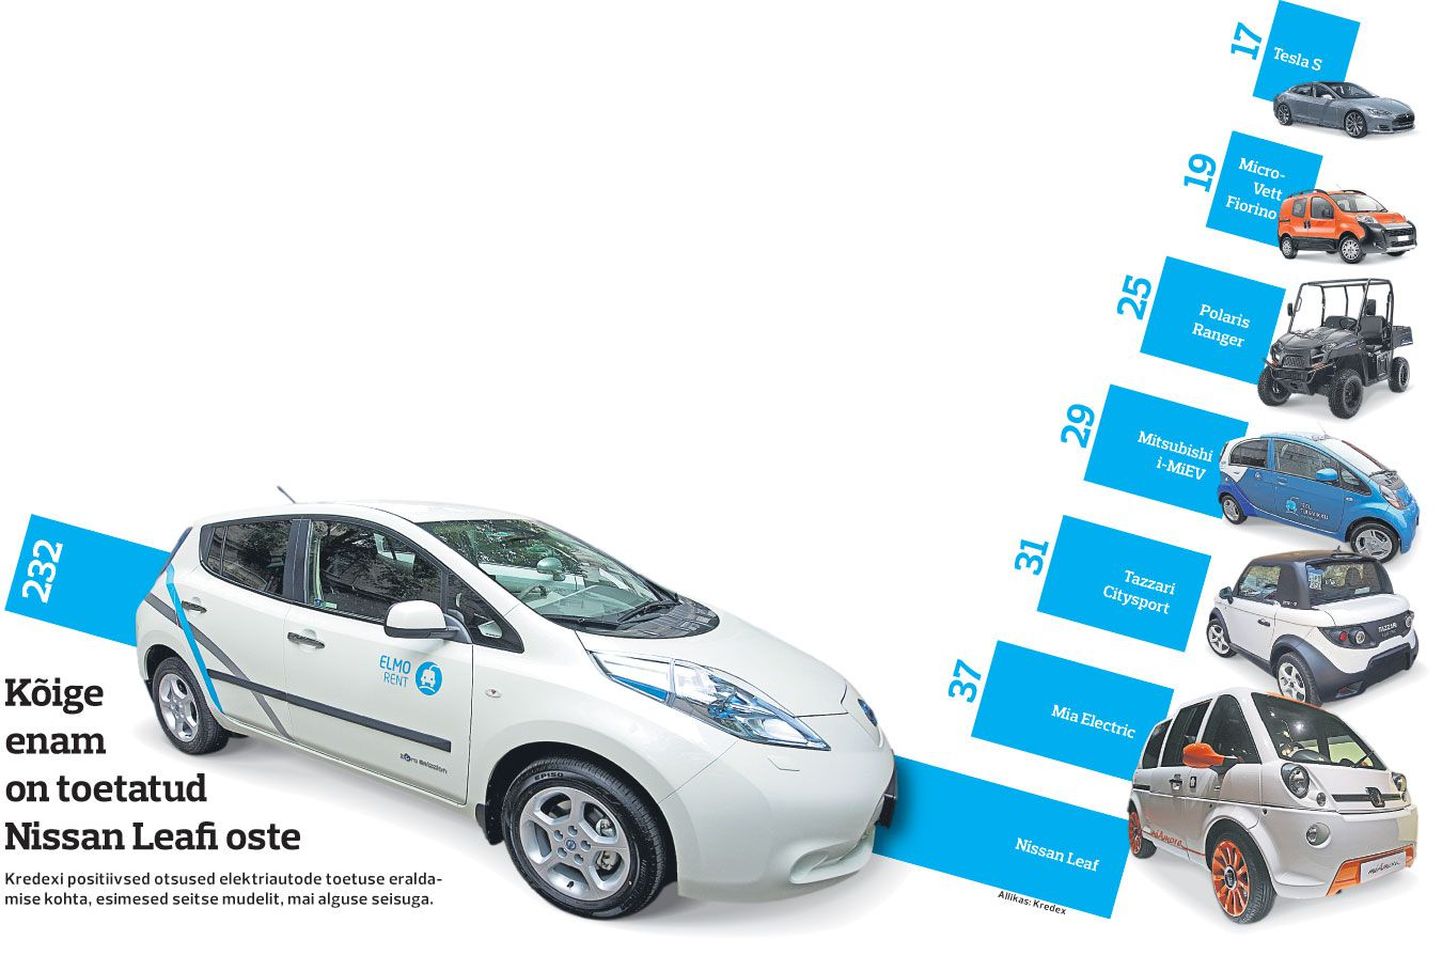 Kõige enam on toetatud Nissan Leafi oste.